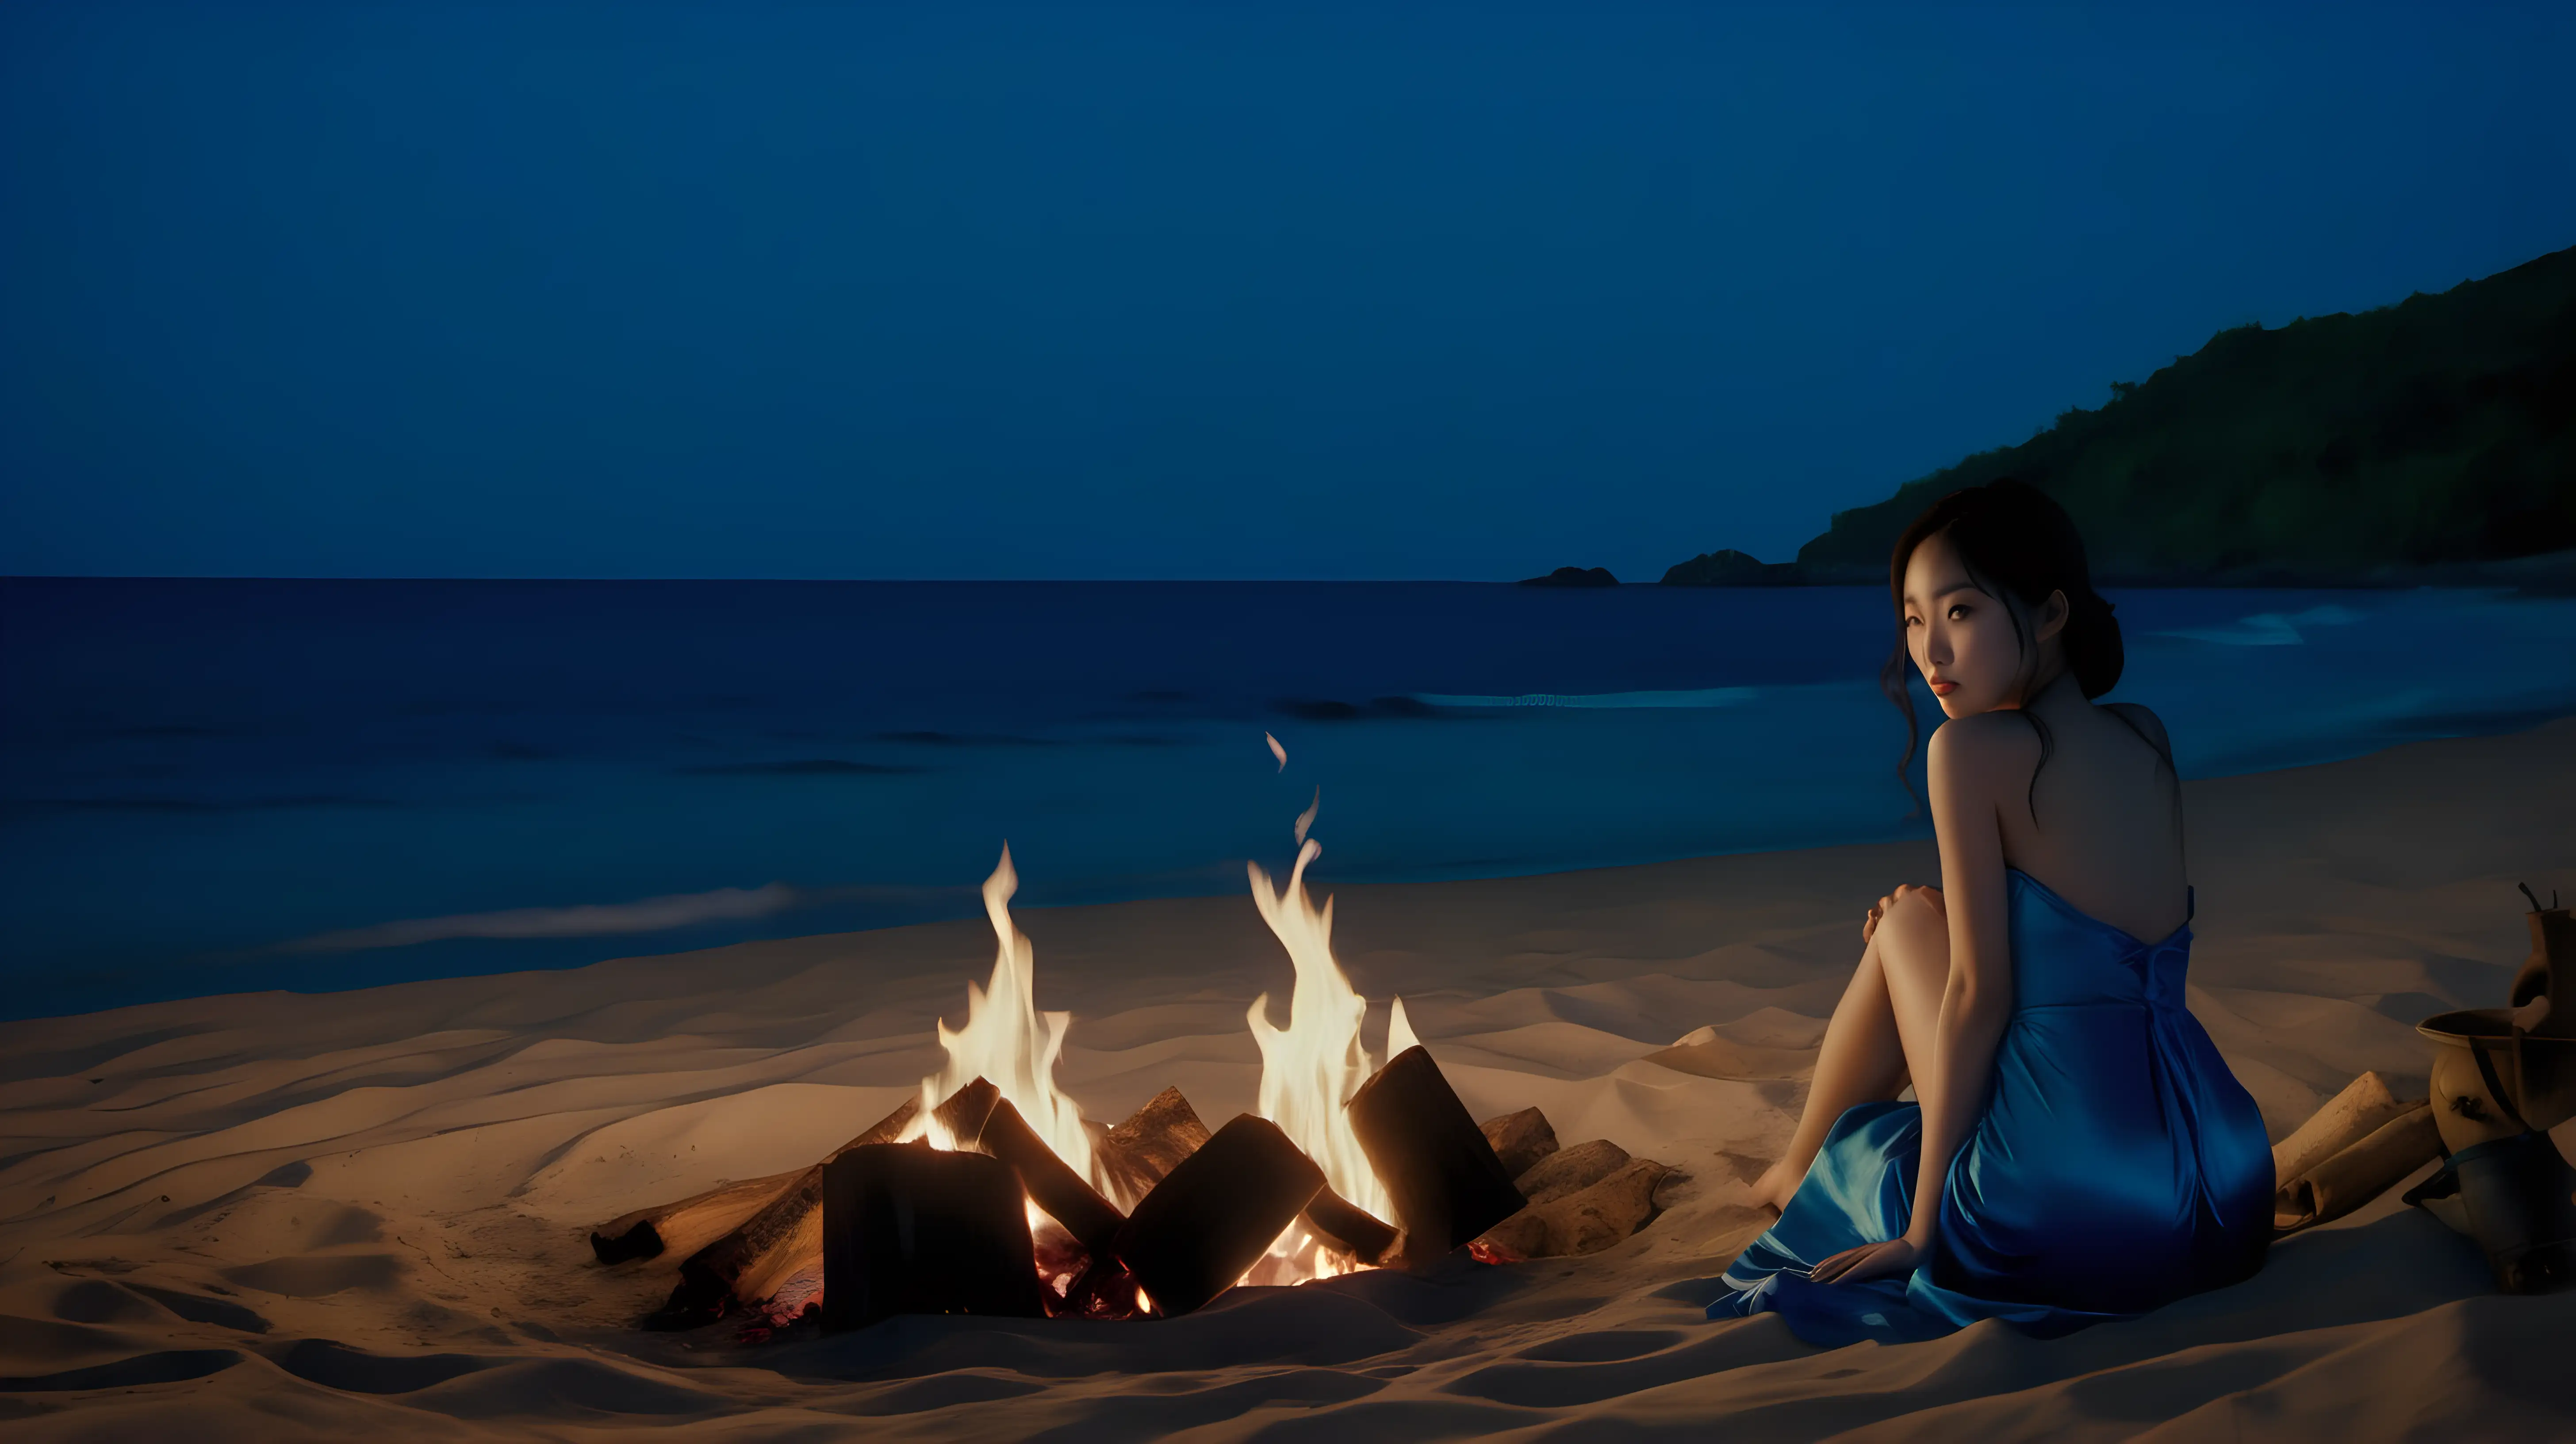 Serene Dusk Korean Woman Enjoys Solitude by the Campfire on Tropical Island Beach